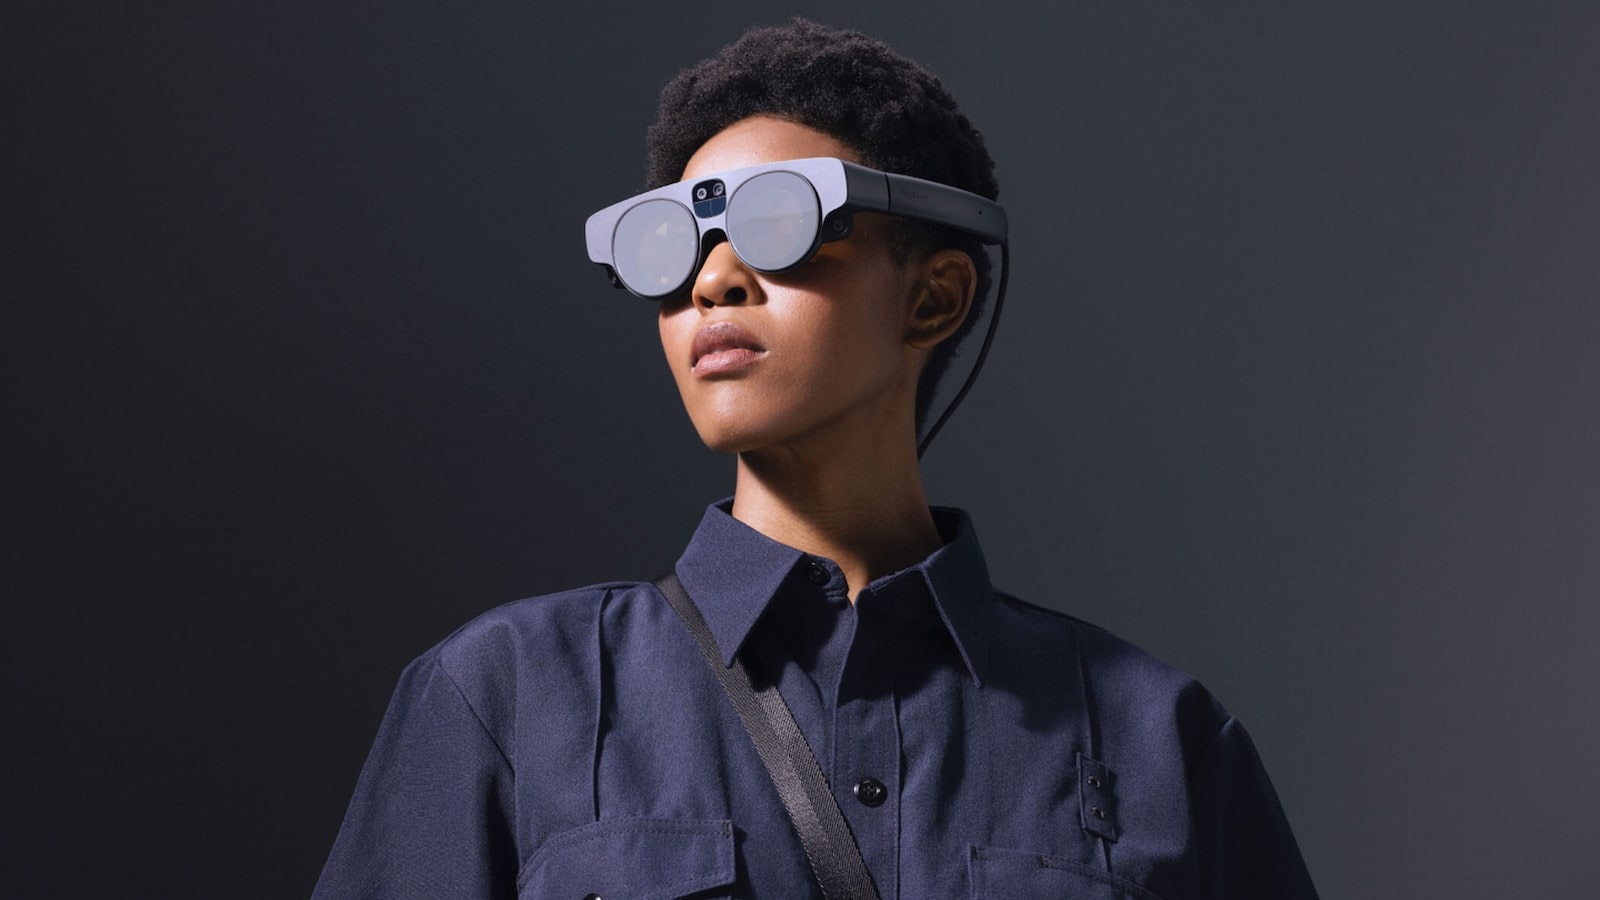 Le retour des Google Glass ? Le géant de la recherche s'associe avec Magic Leap pour un projet secret